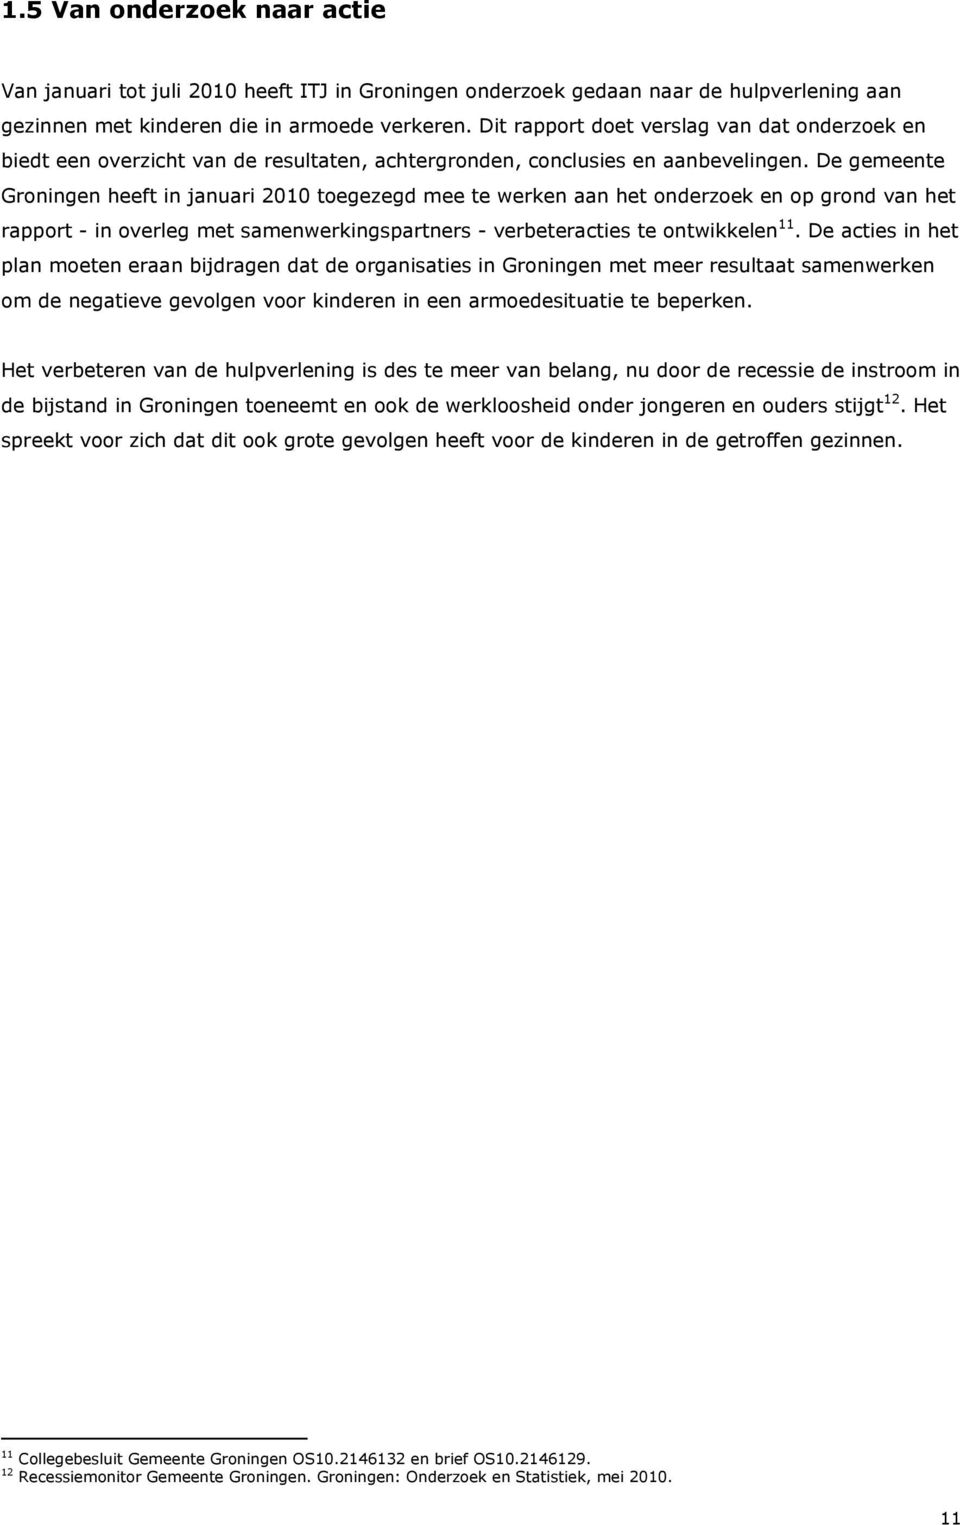 De gemeente Groningen heeft in januari 2010 toegezegd mee te werken aan het onderzoek en op grond van het rapport - in overleg met samenwerkingspartners - verbeteracties te ontwikkelen 11.